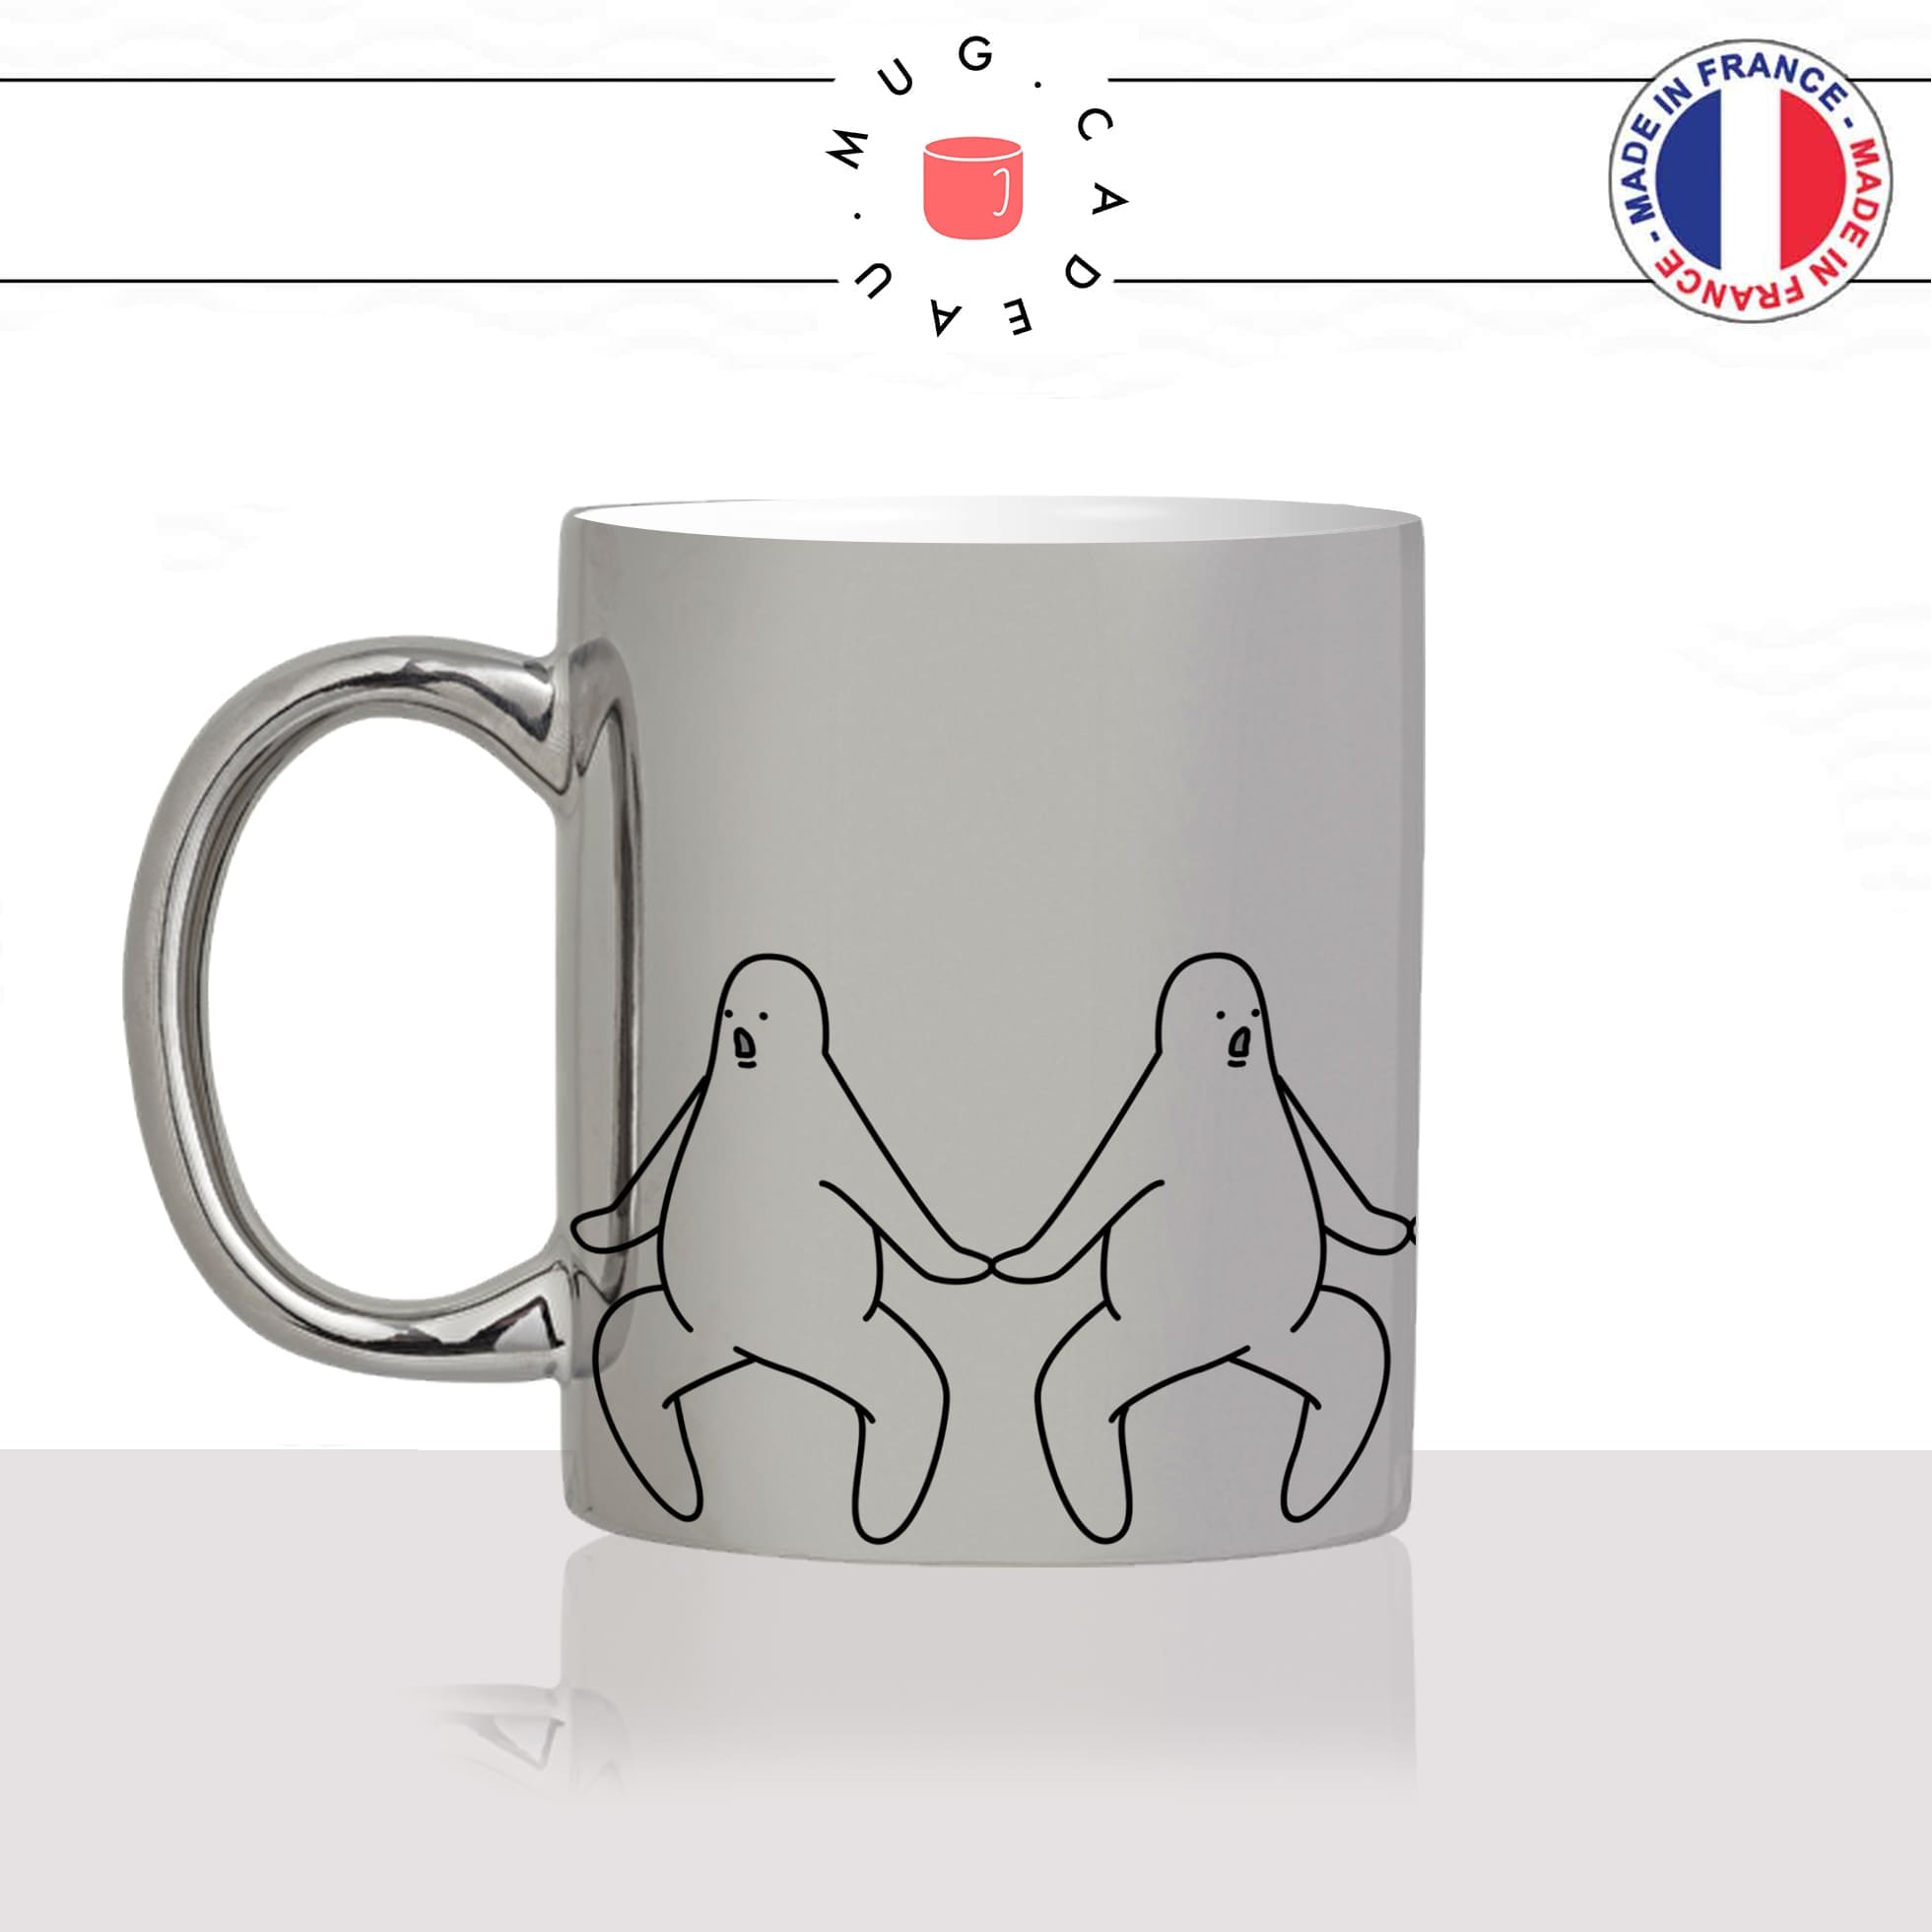 mug-tasse-argent-argenté-silver-oh-my-god-oh-mon-dieu-surprise-bonhommes-dessin-femme-homme-humour-idée-cadeau-fun-cool-café-thé